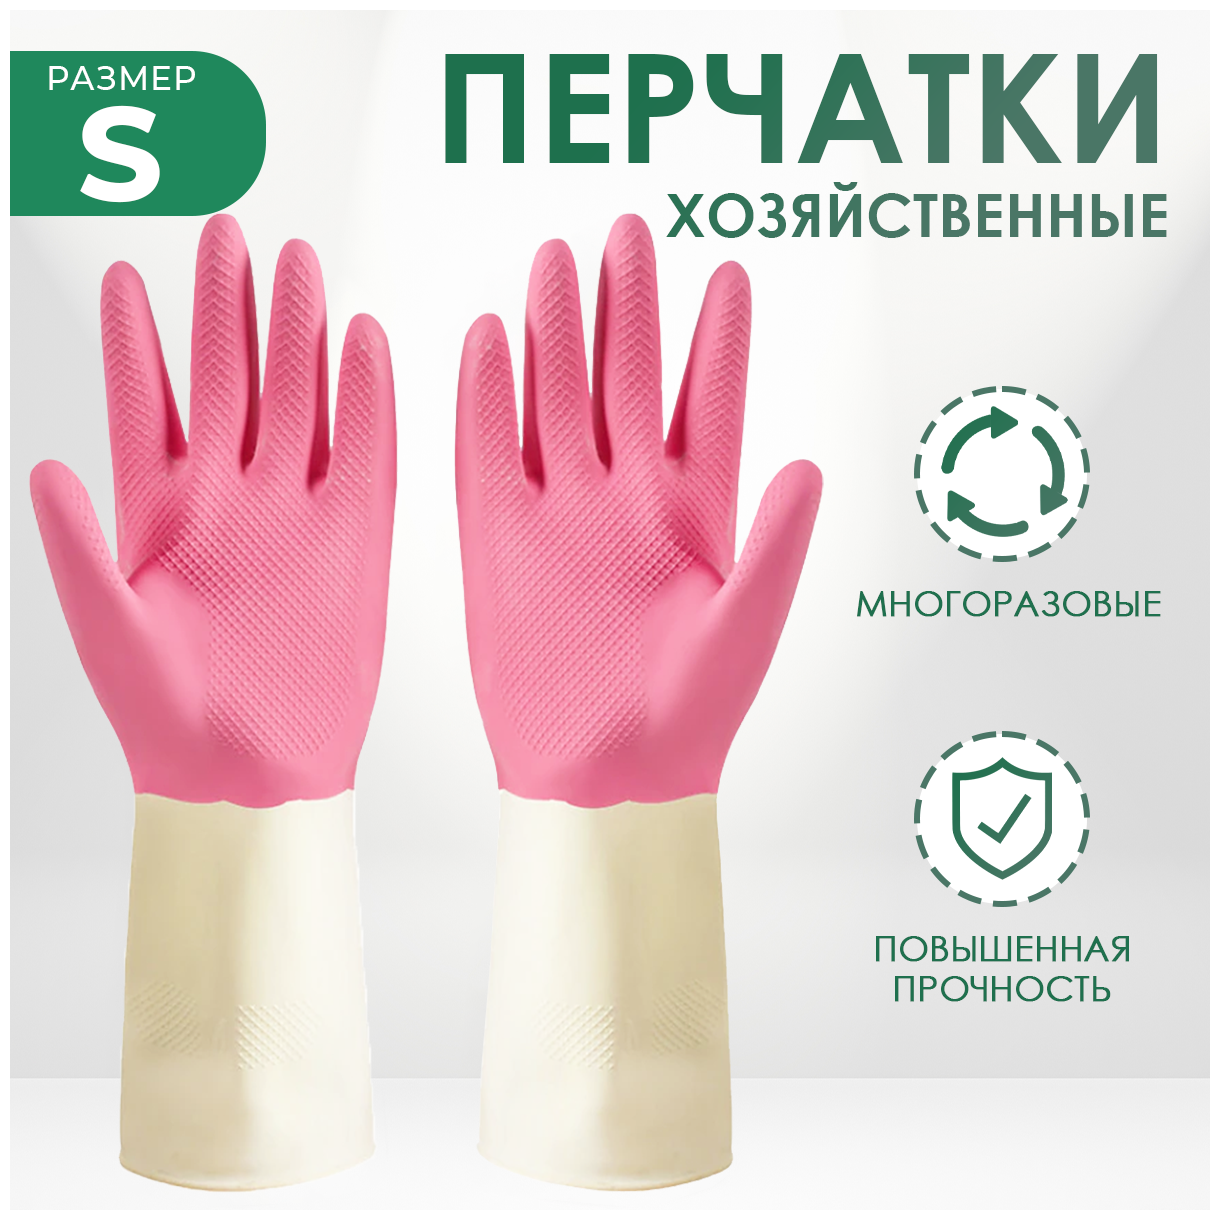 Хозяйственные перчатки MRD для мытья и уборки с усиленной манжетой, 1 пара, размер S